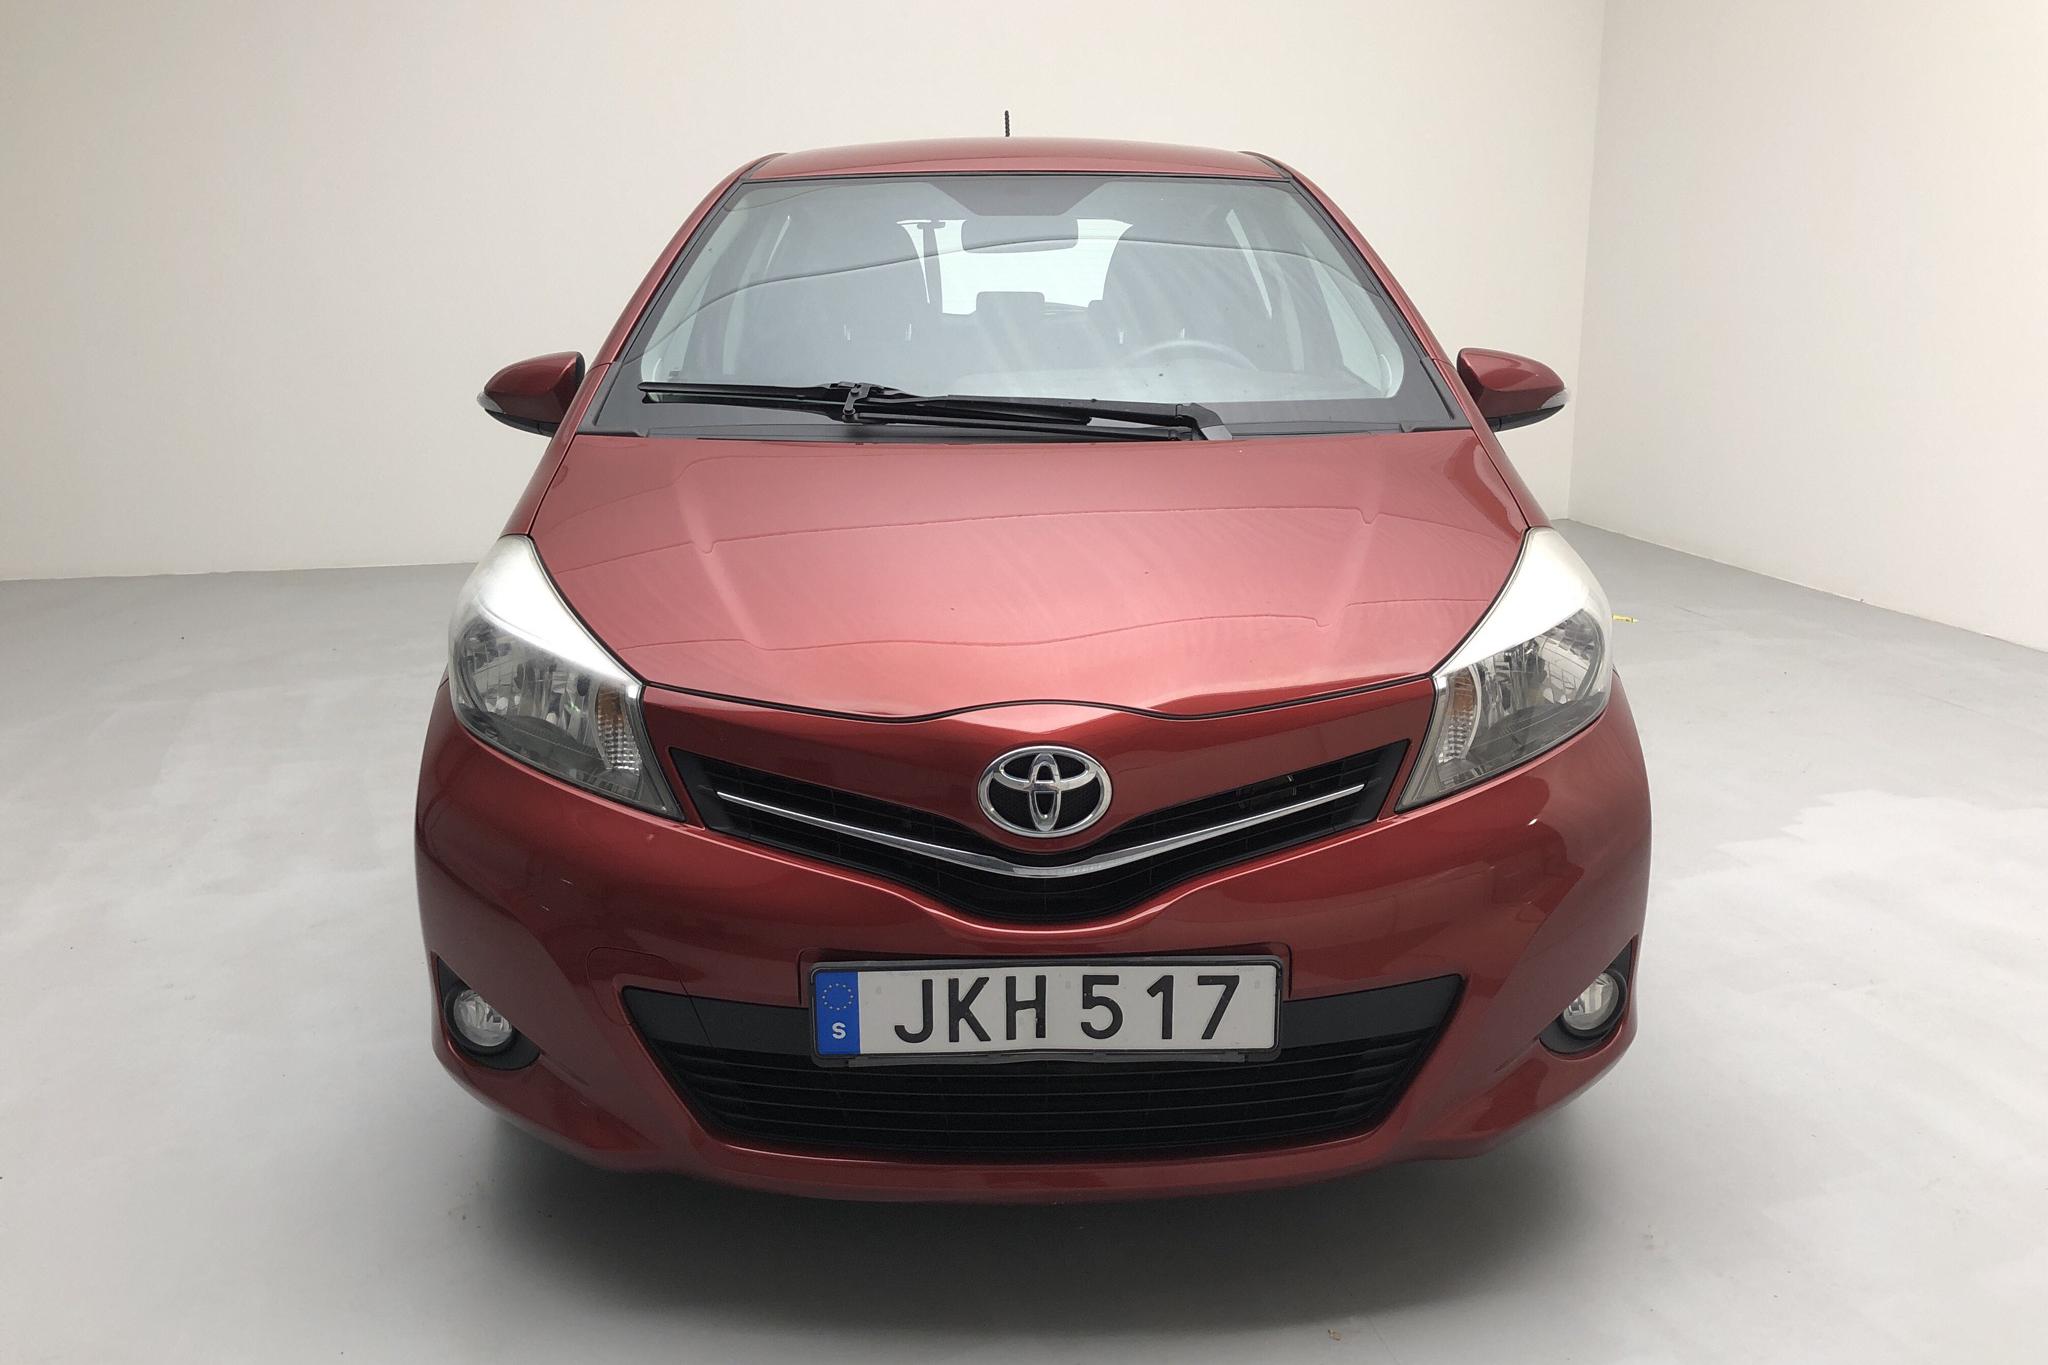 Toyota Yaris 1.33 5dr (100hk) - 88 010 km - Manual - red - 2014